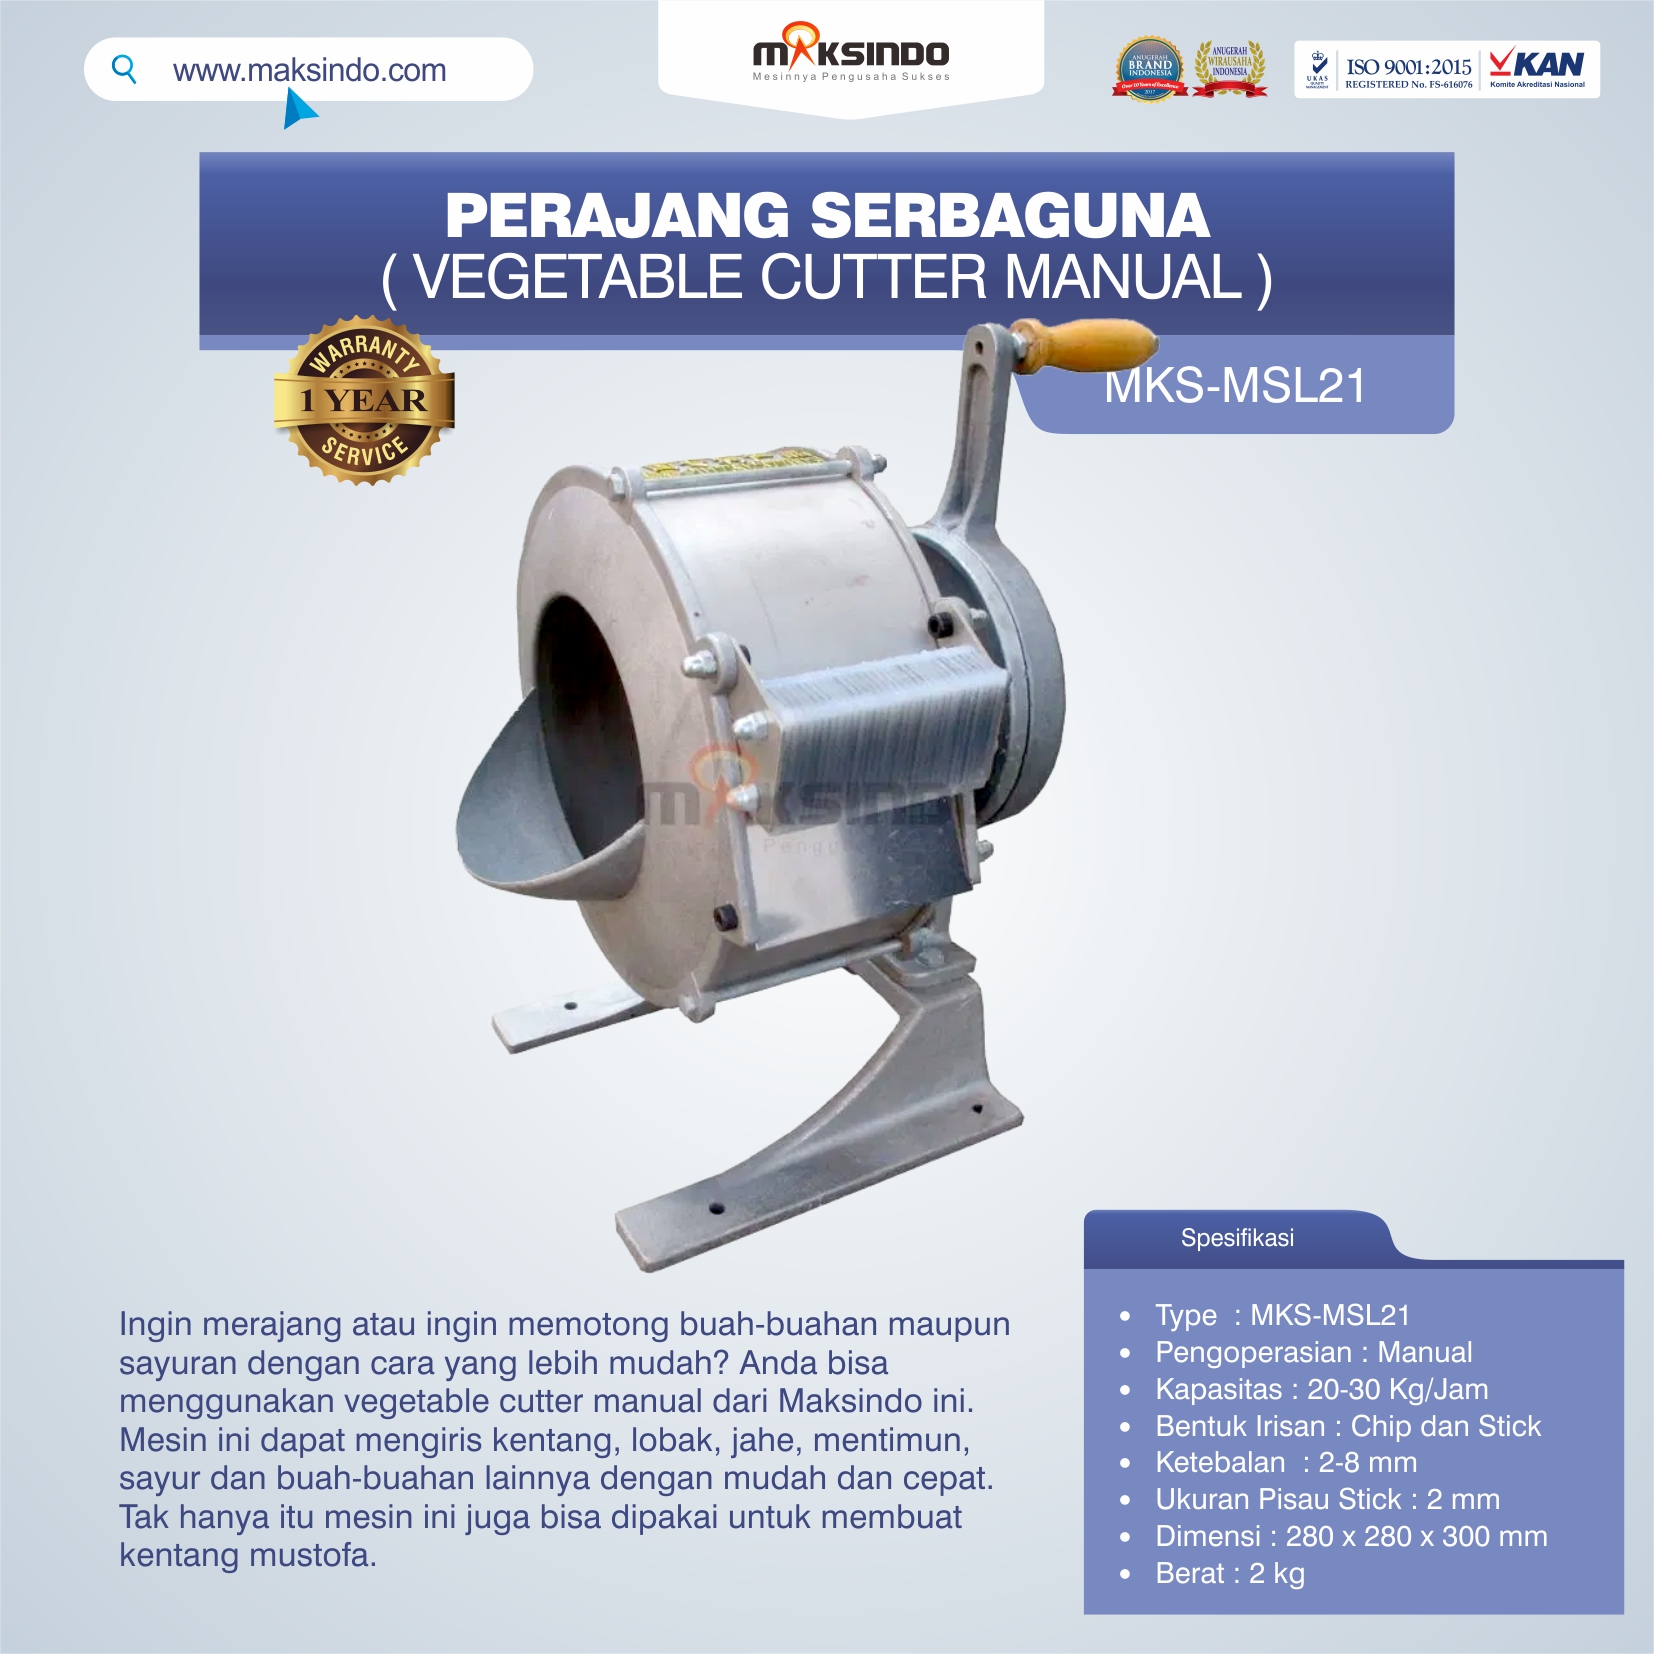 Jual Perajang Serbaguna (Vegetable Cutter Manual) MKS-MSL21 di Tangerang